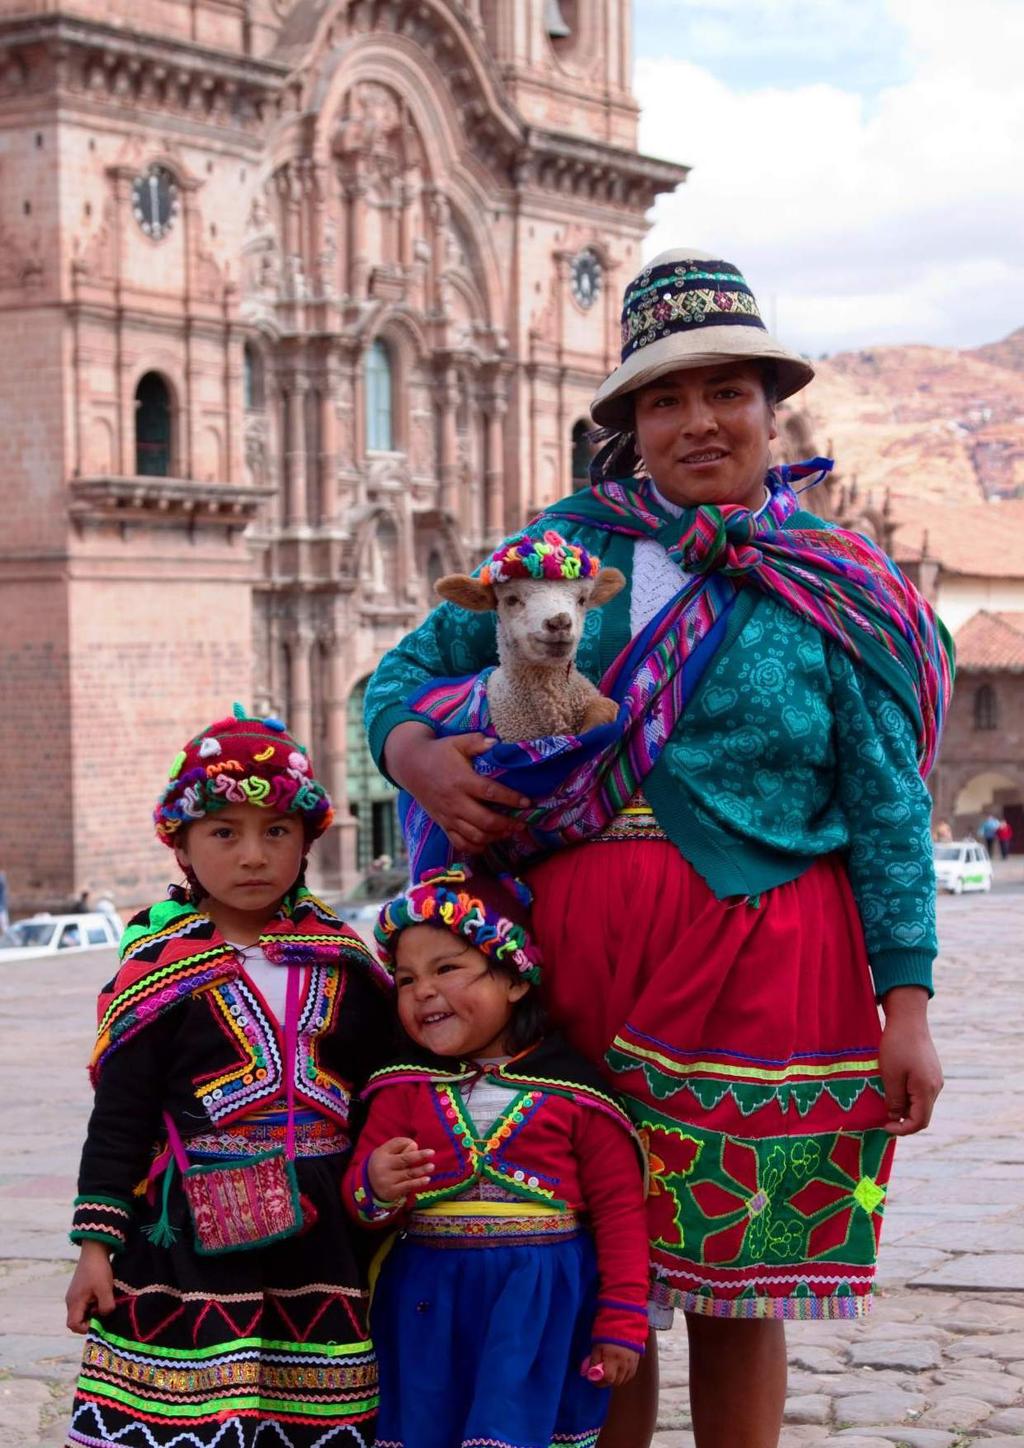 南美 秘魯 : 利馬 帕拉卡斯 巴雷斯塔思島 皮斯科 庫斯科